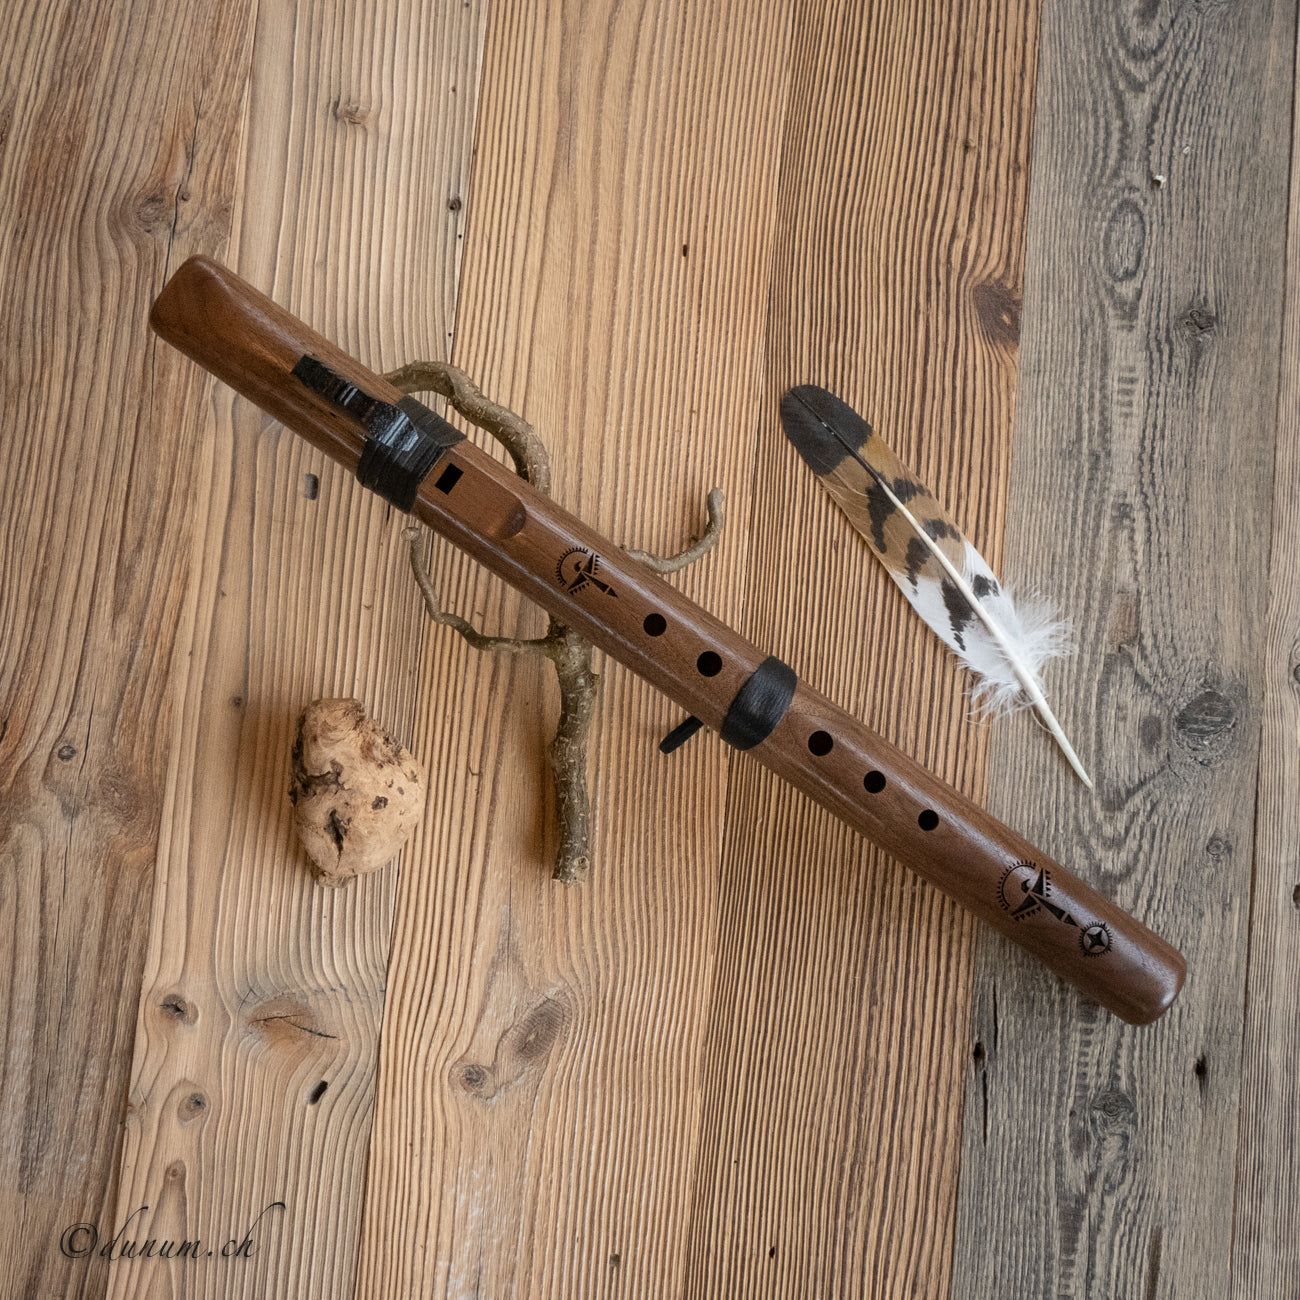 Condor Bass E | Blasinstrumente | Indianische Flöten | Dunum.ch